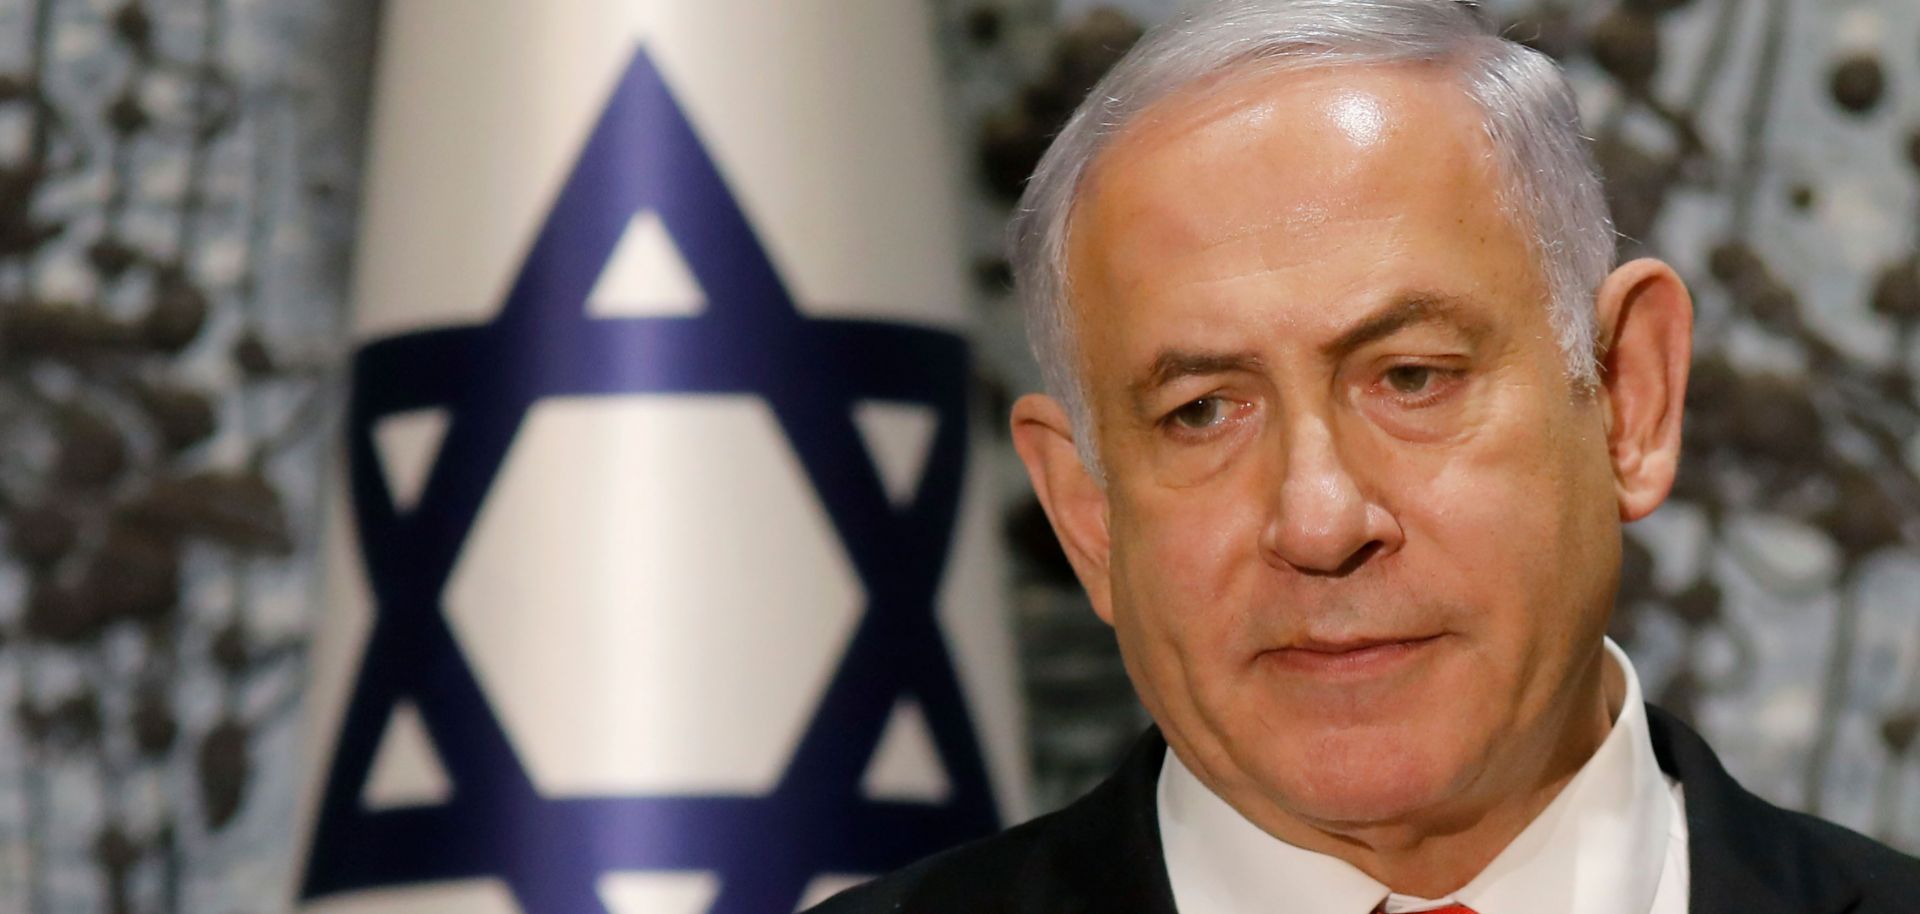 Israeli Prime Minister Benjamin Netanyahu speaks during a news conference in Jerusalem on Sept. 25, 2019.